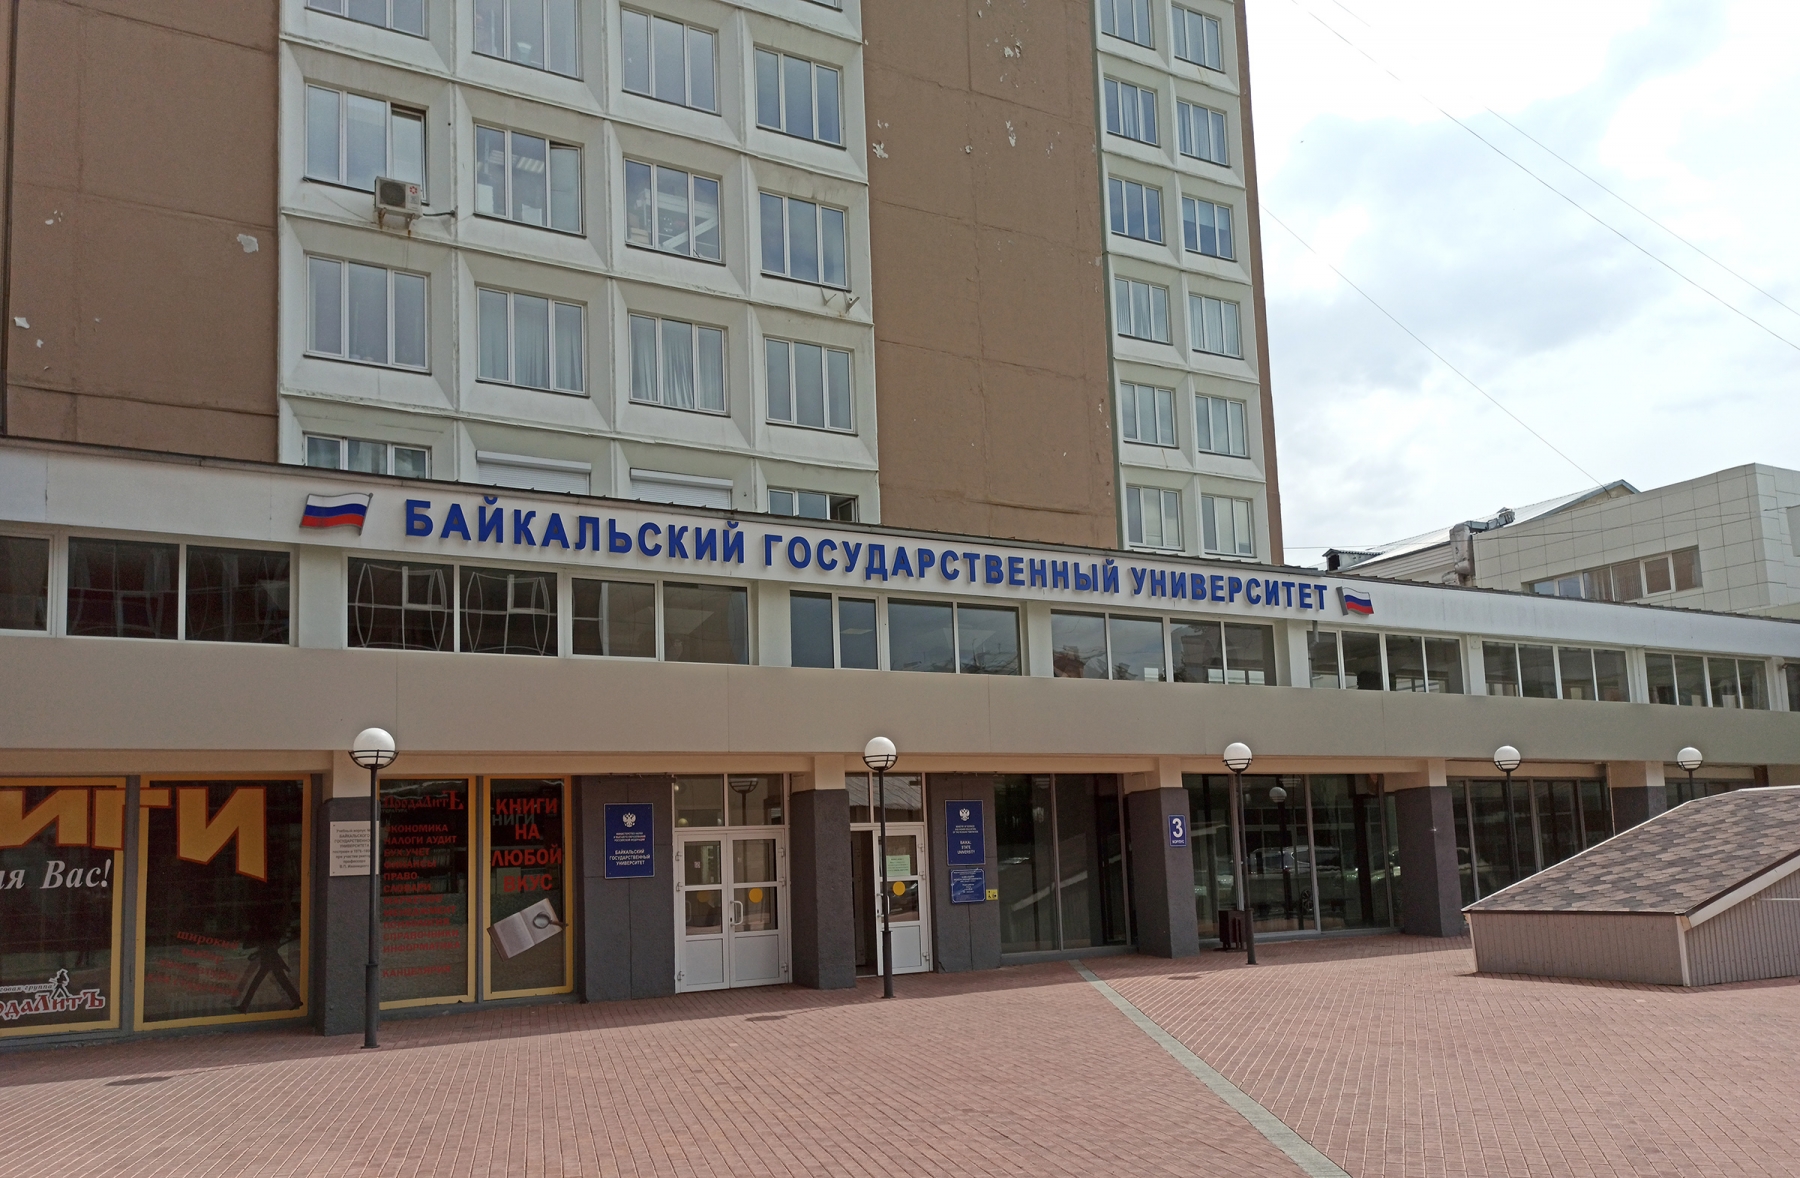 Сайт байкальского государственного университета иркутск